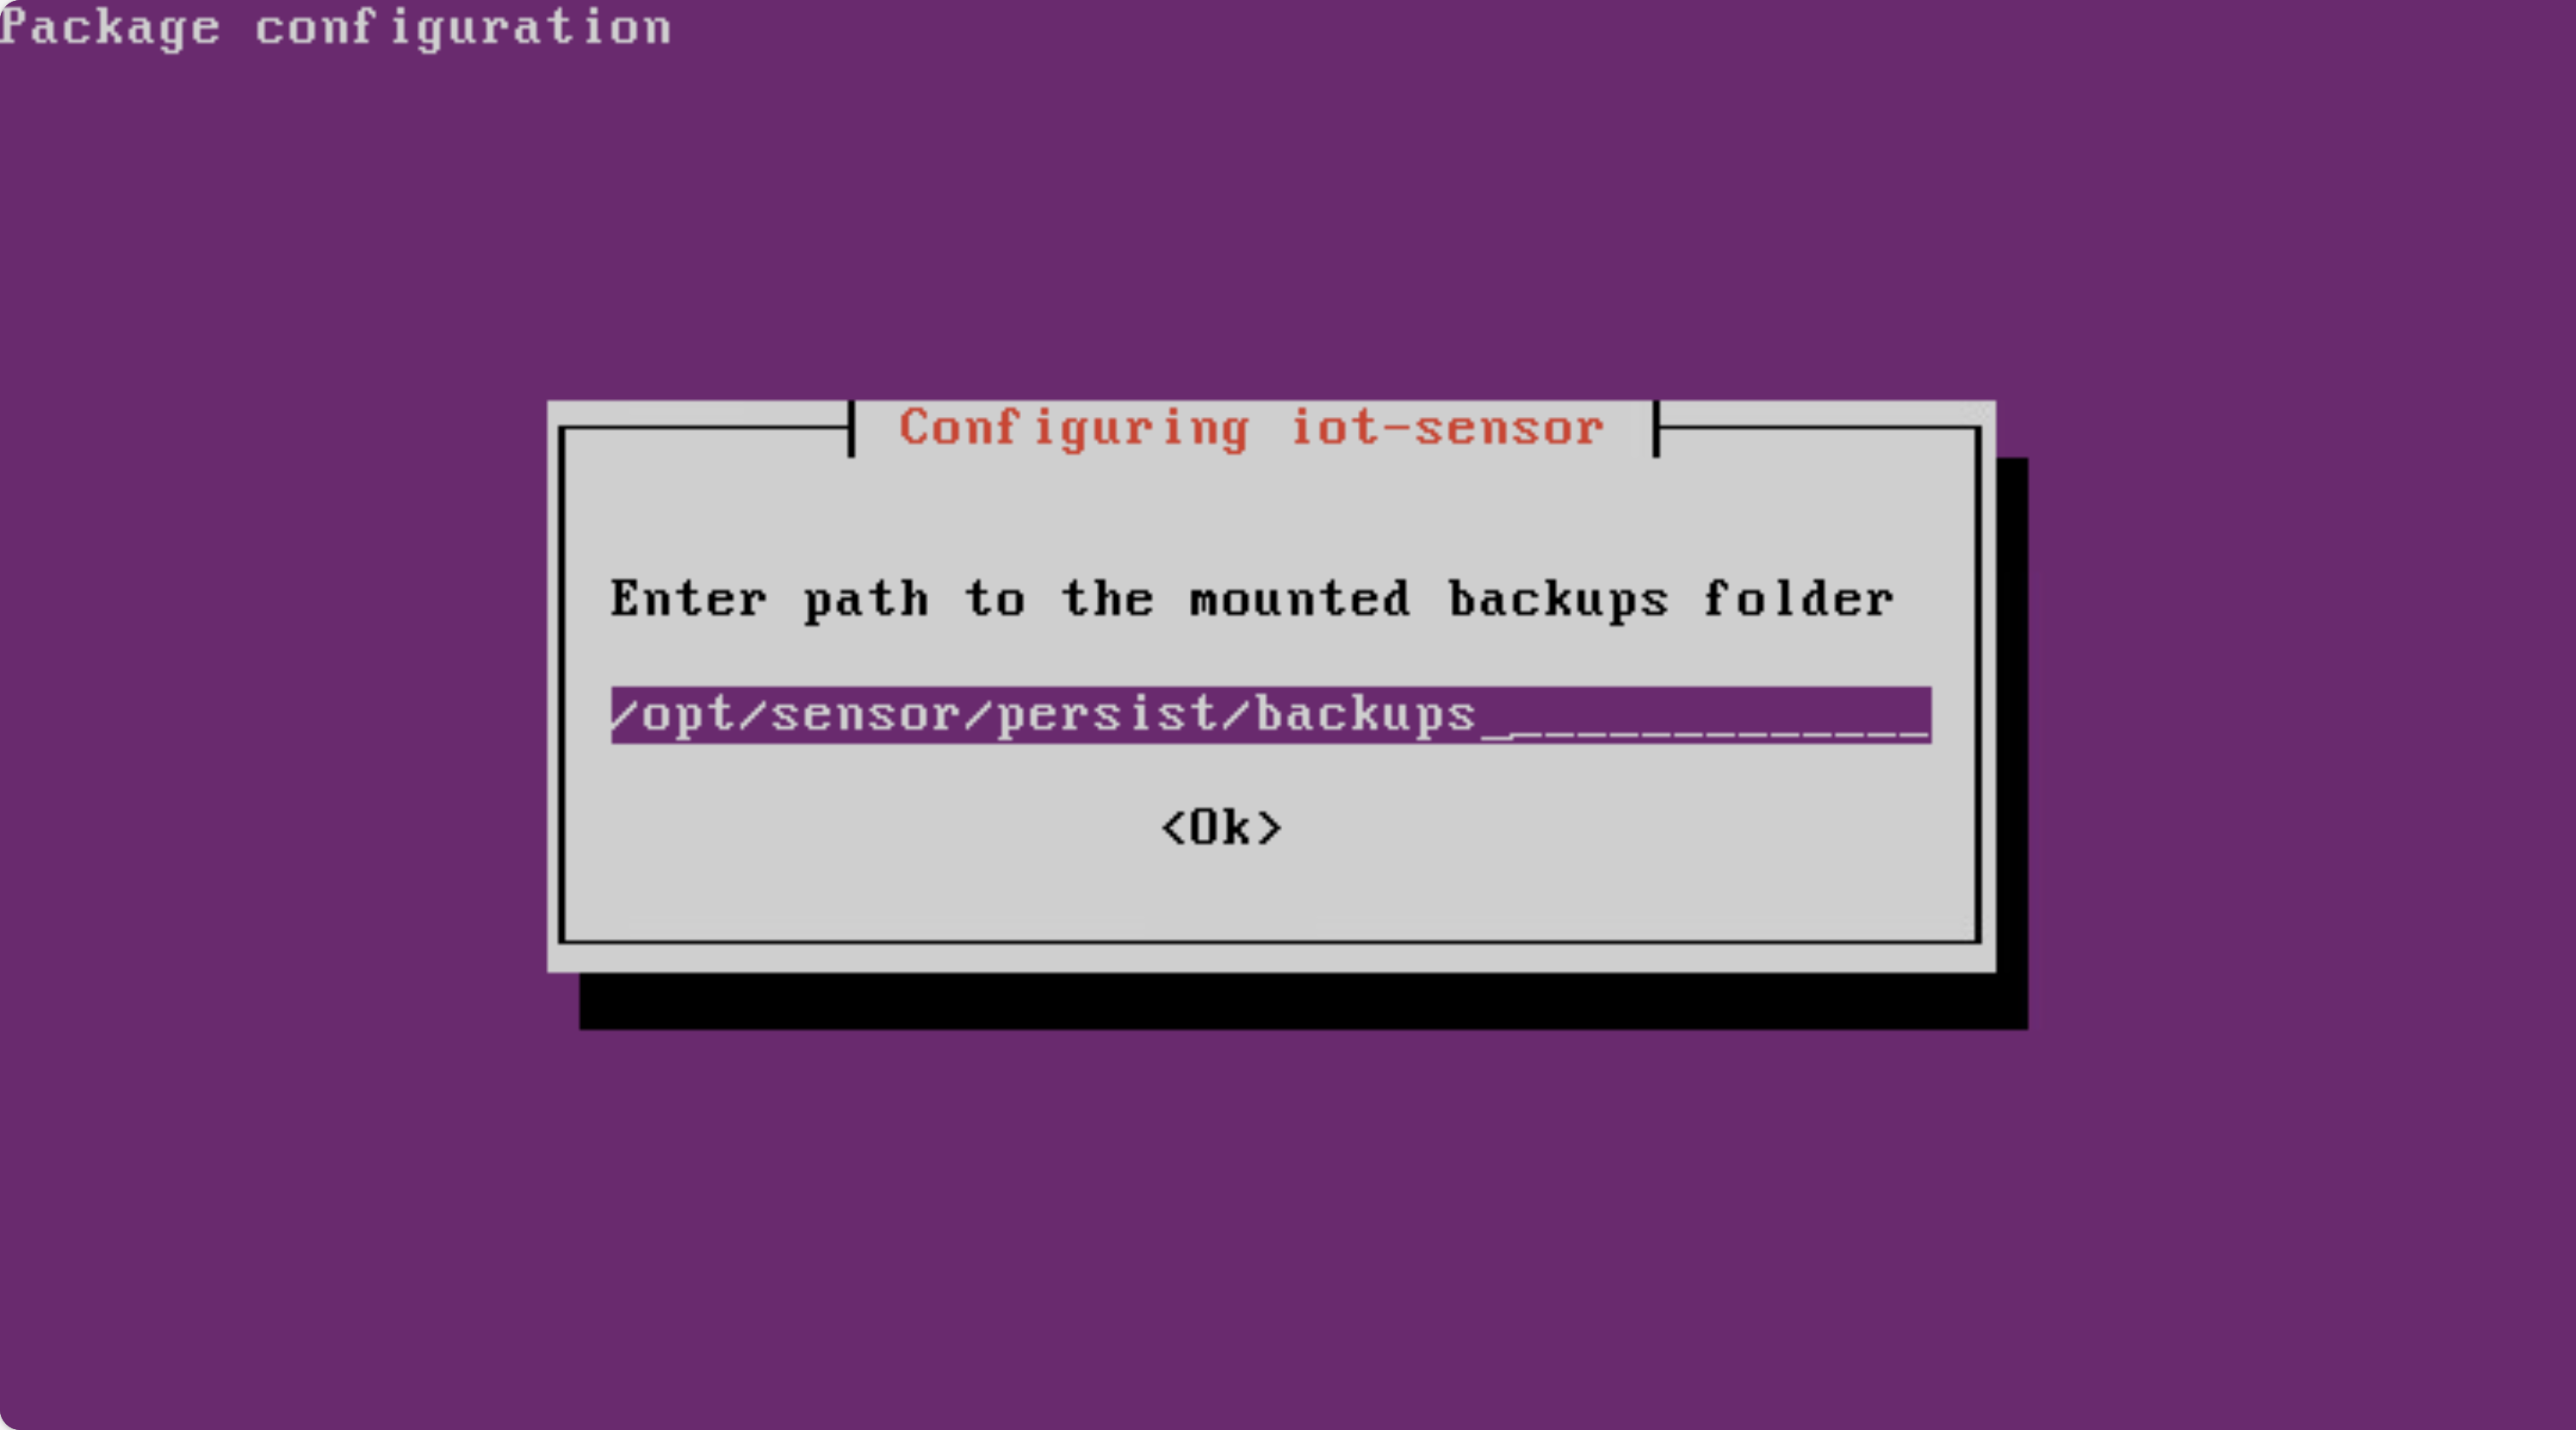 Captura de tela da configuração da pasta de backups montados.